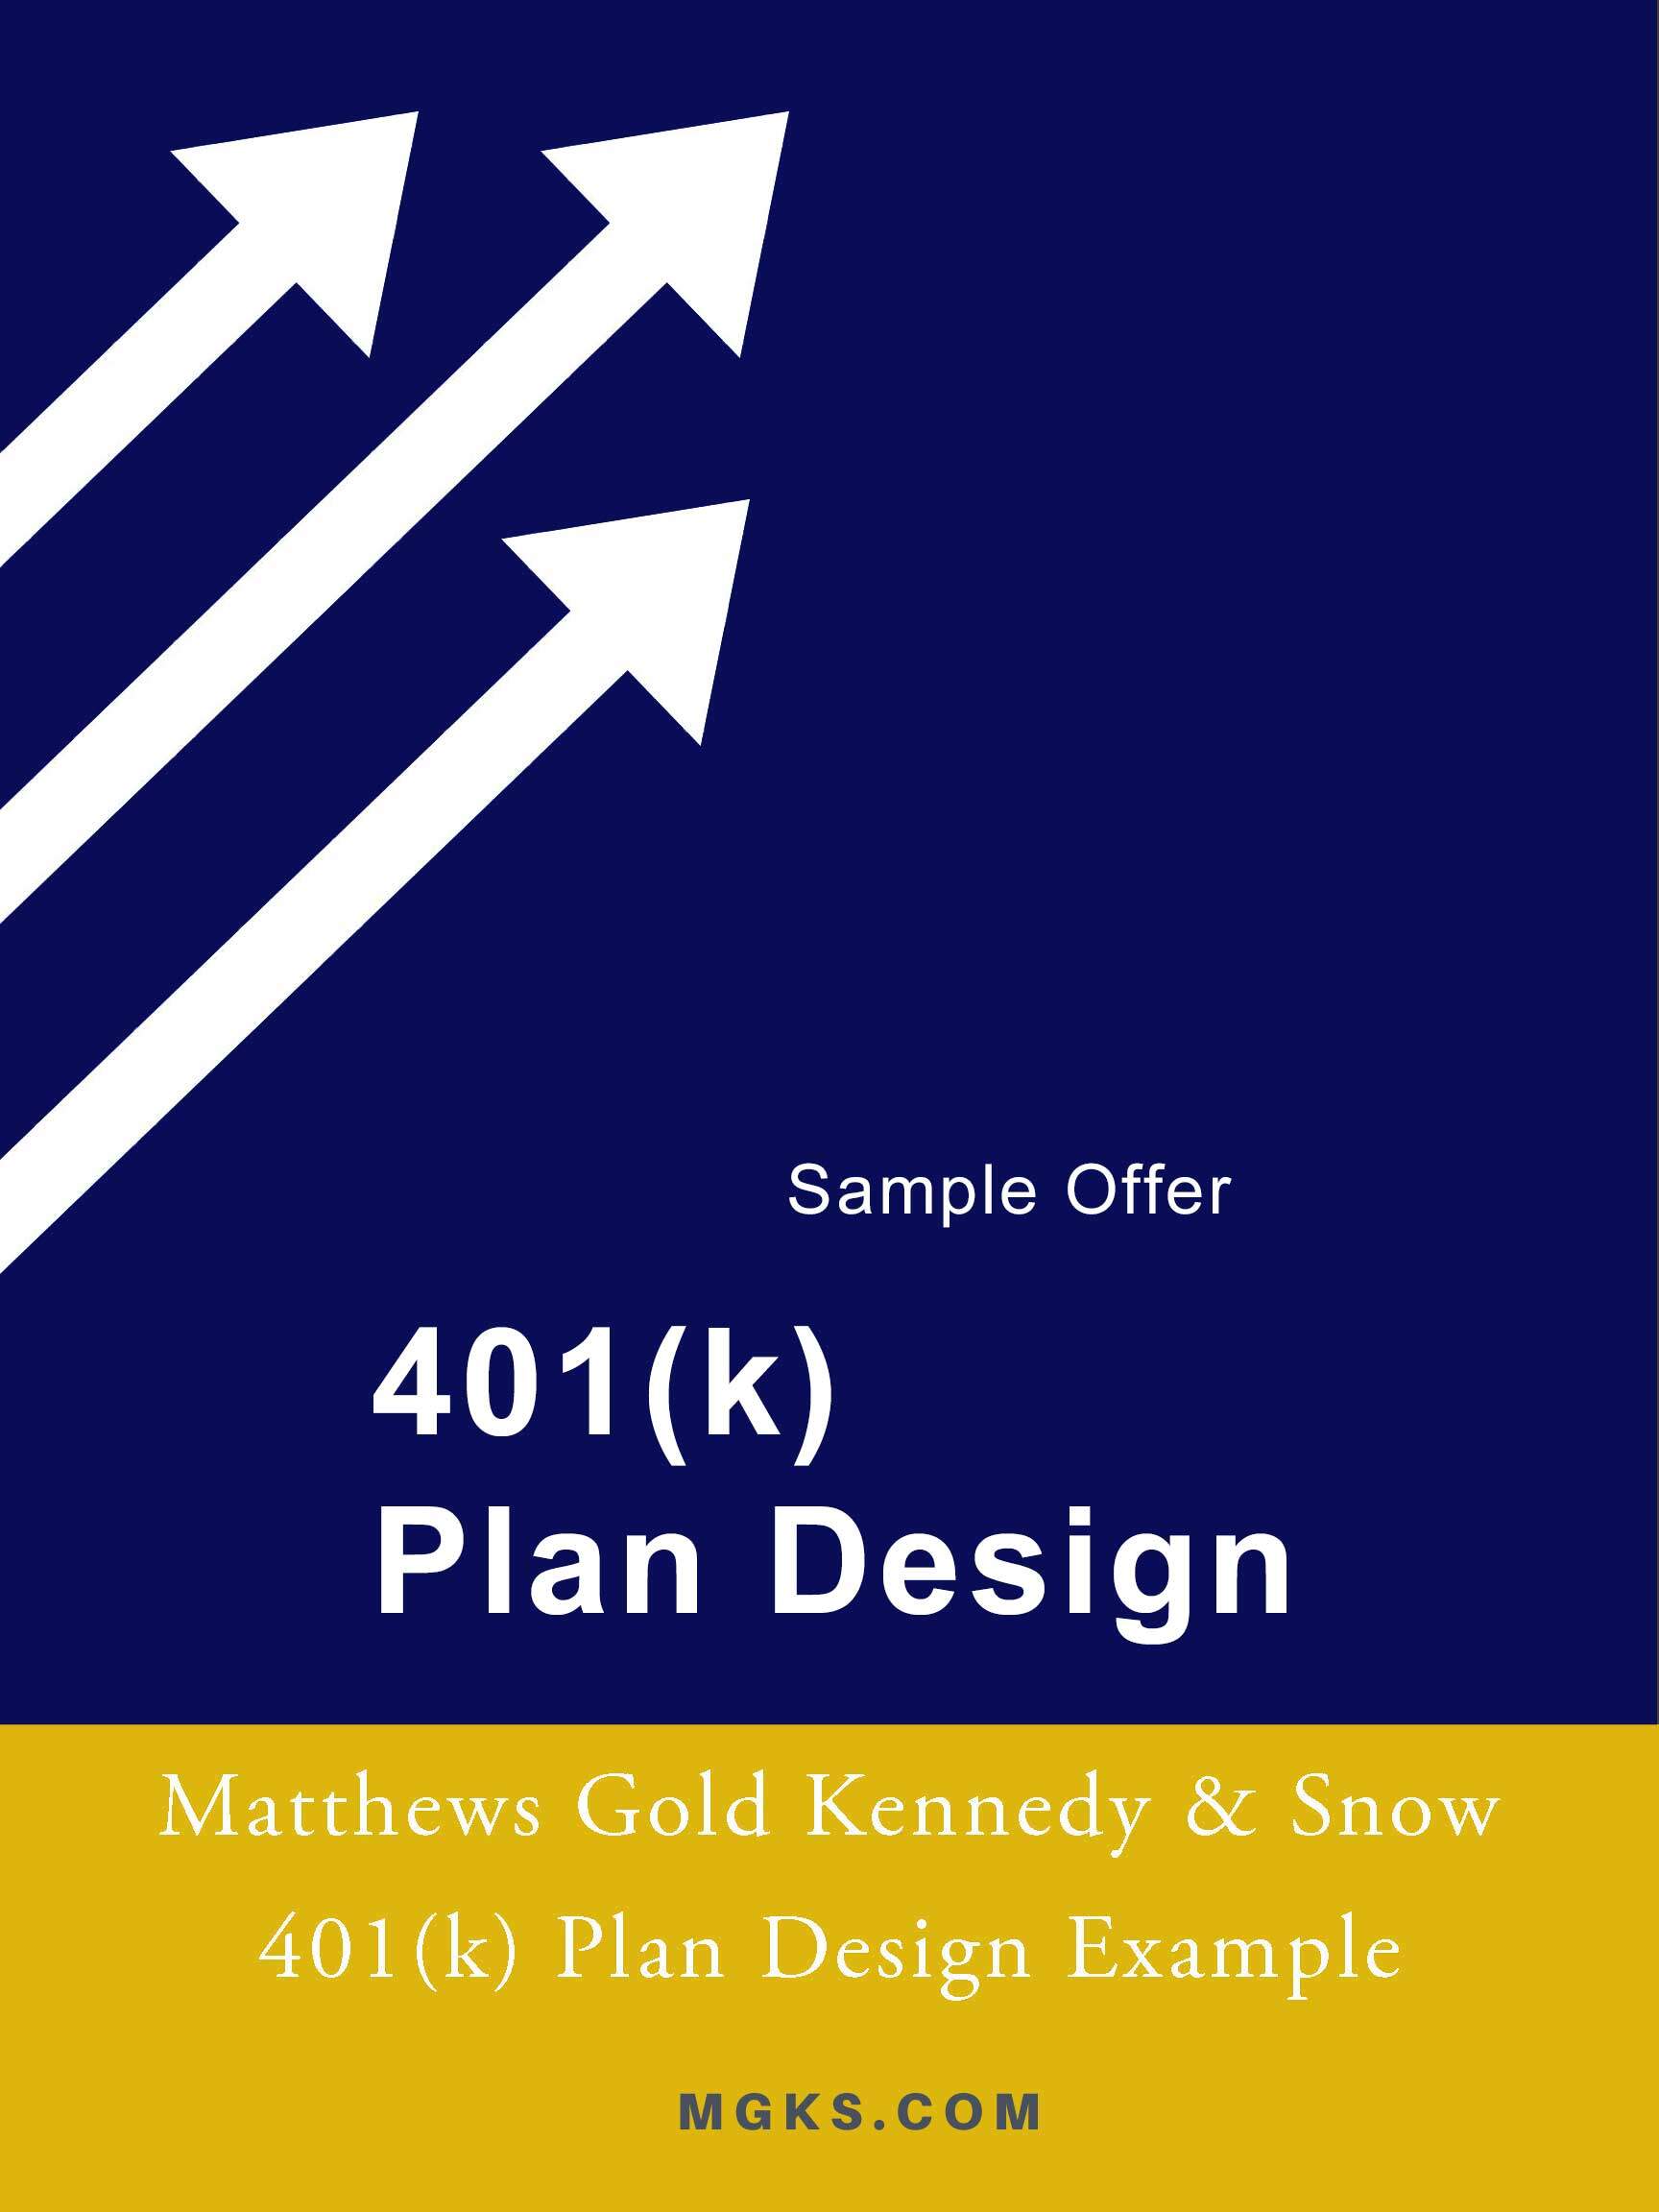 401(k) Sample E-book Offer